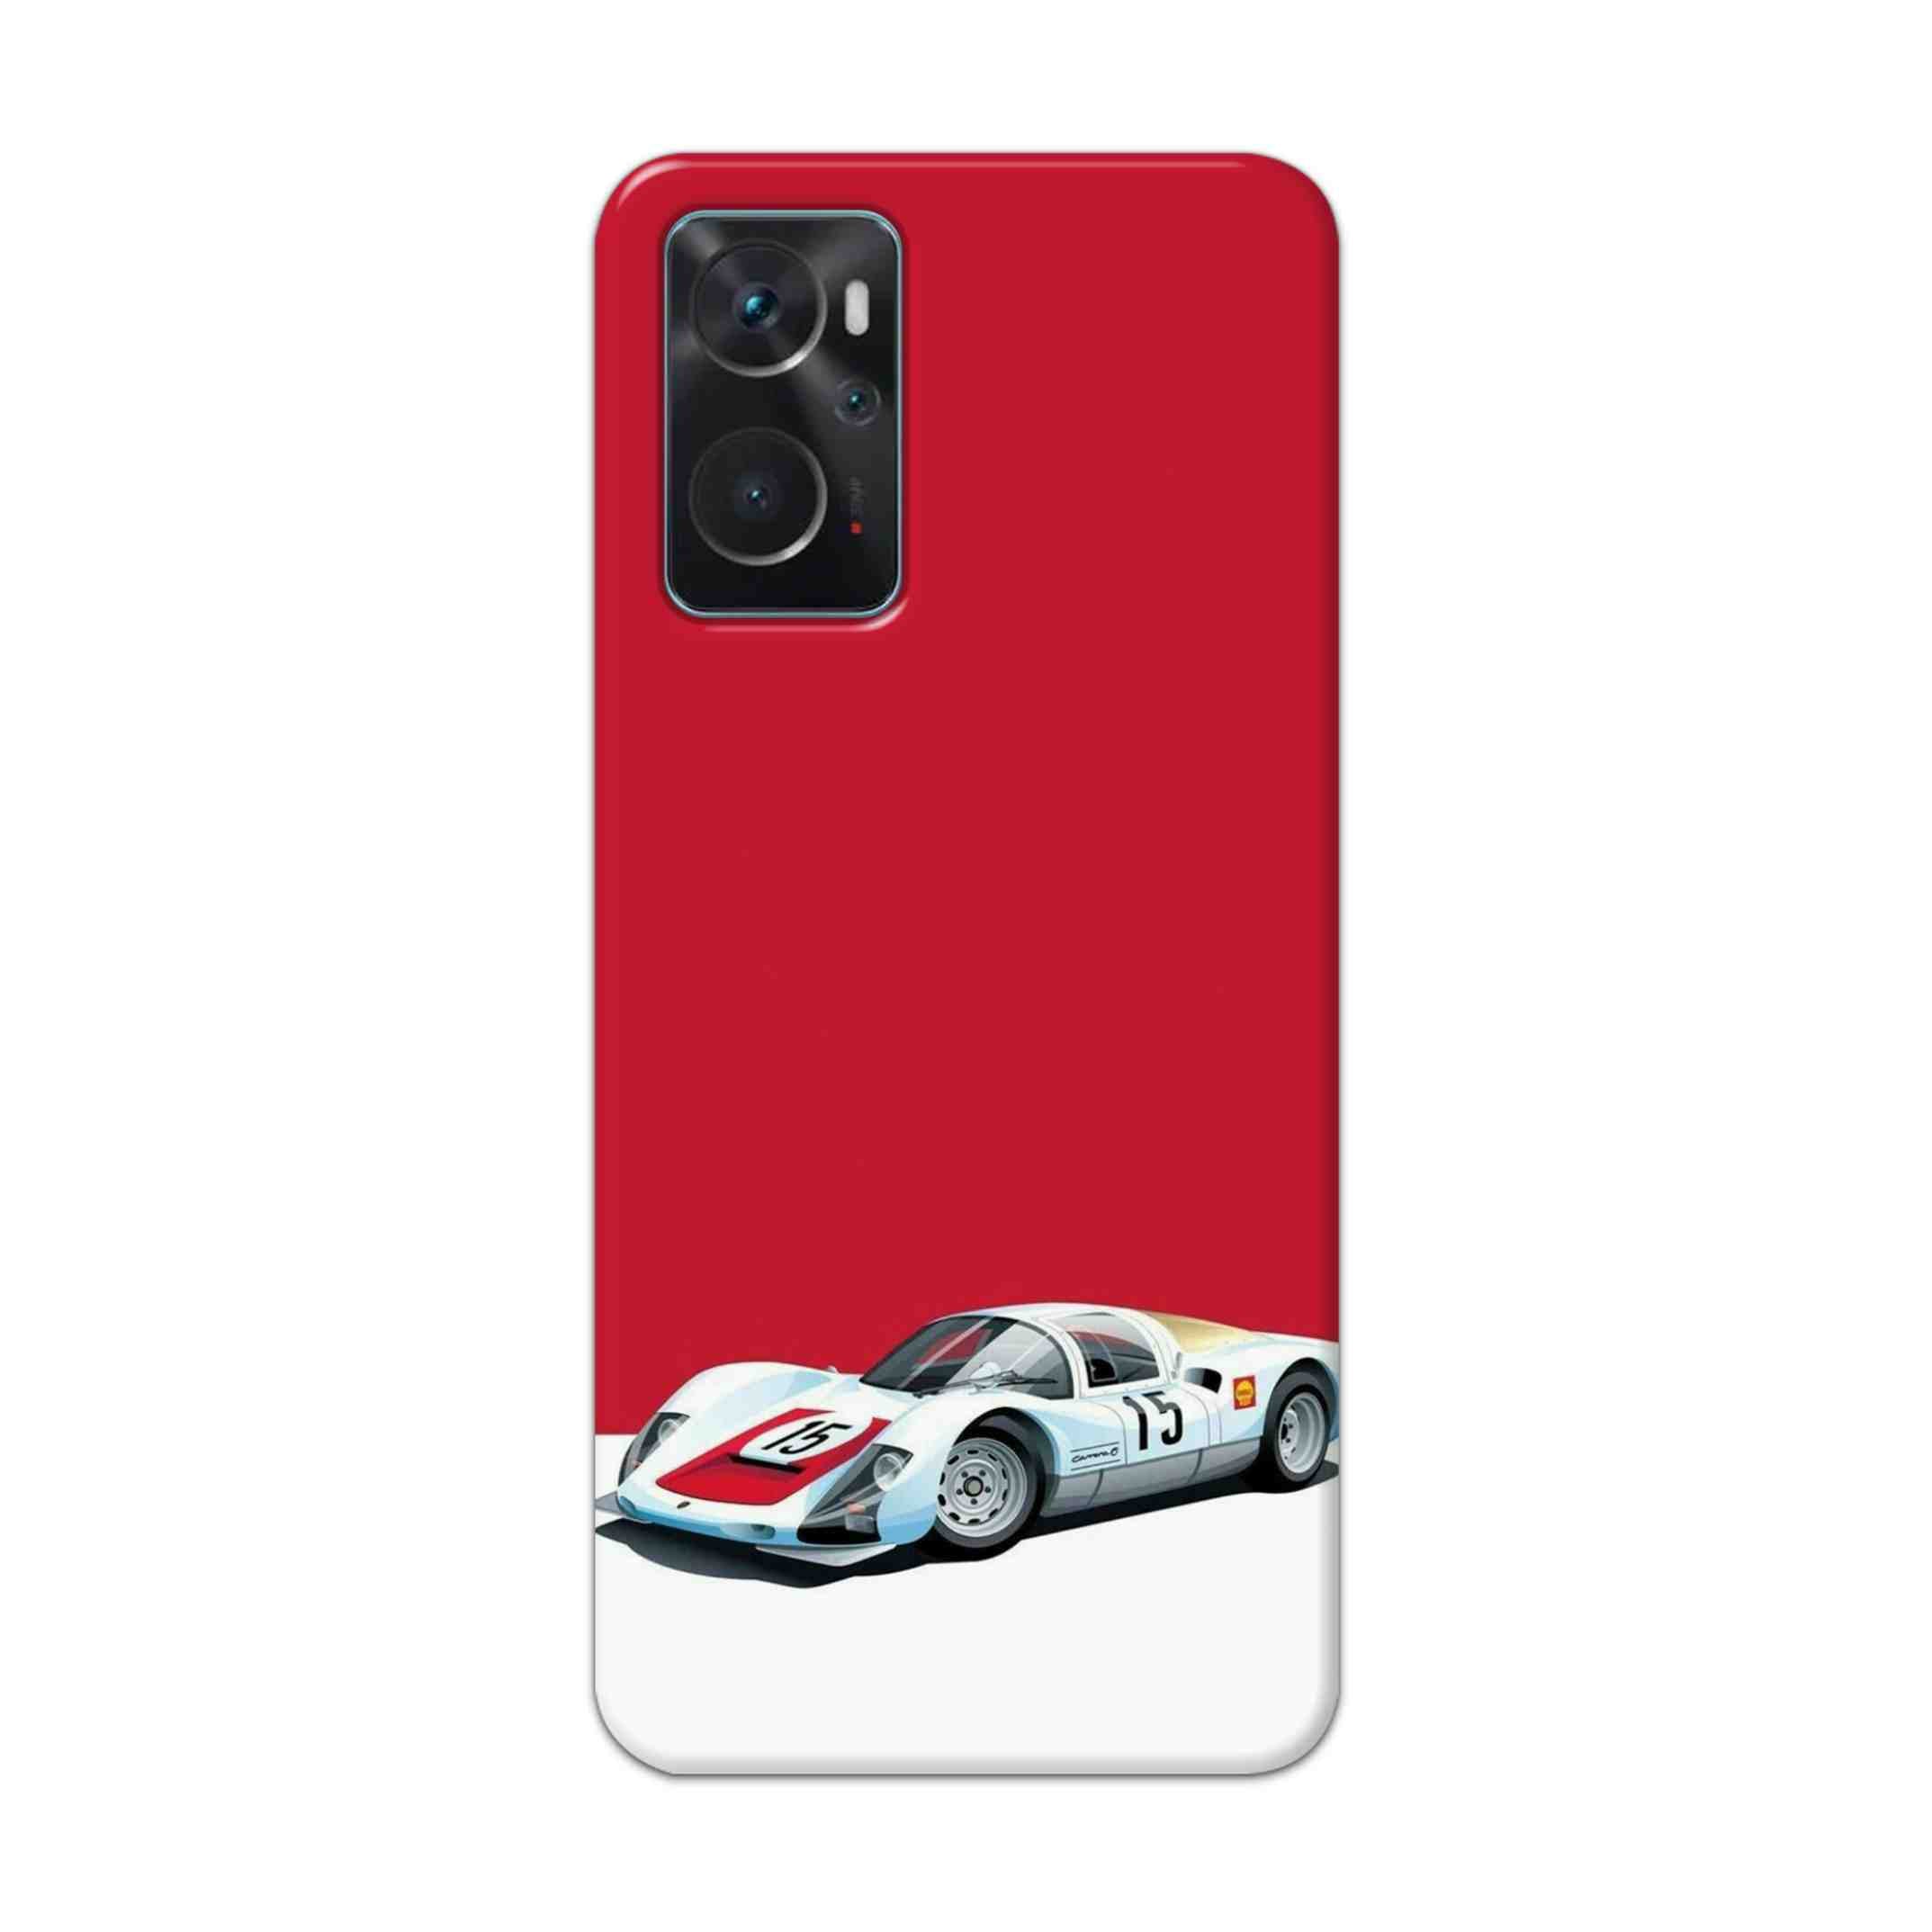 Buy Ferrari F15 Hard Back Mobile Phone Case Cover For Oppo K10 Online